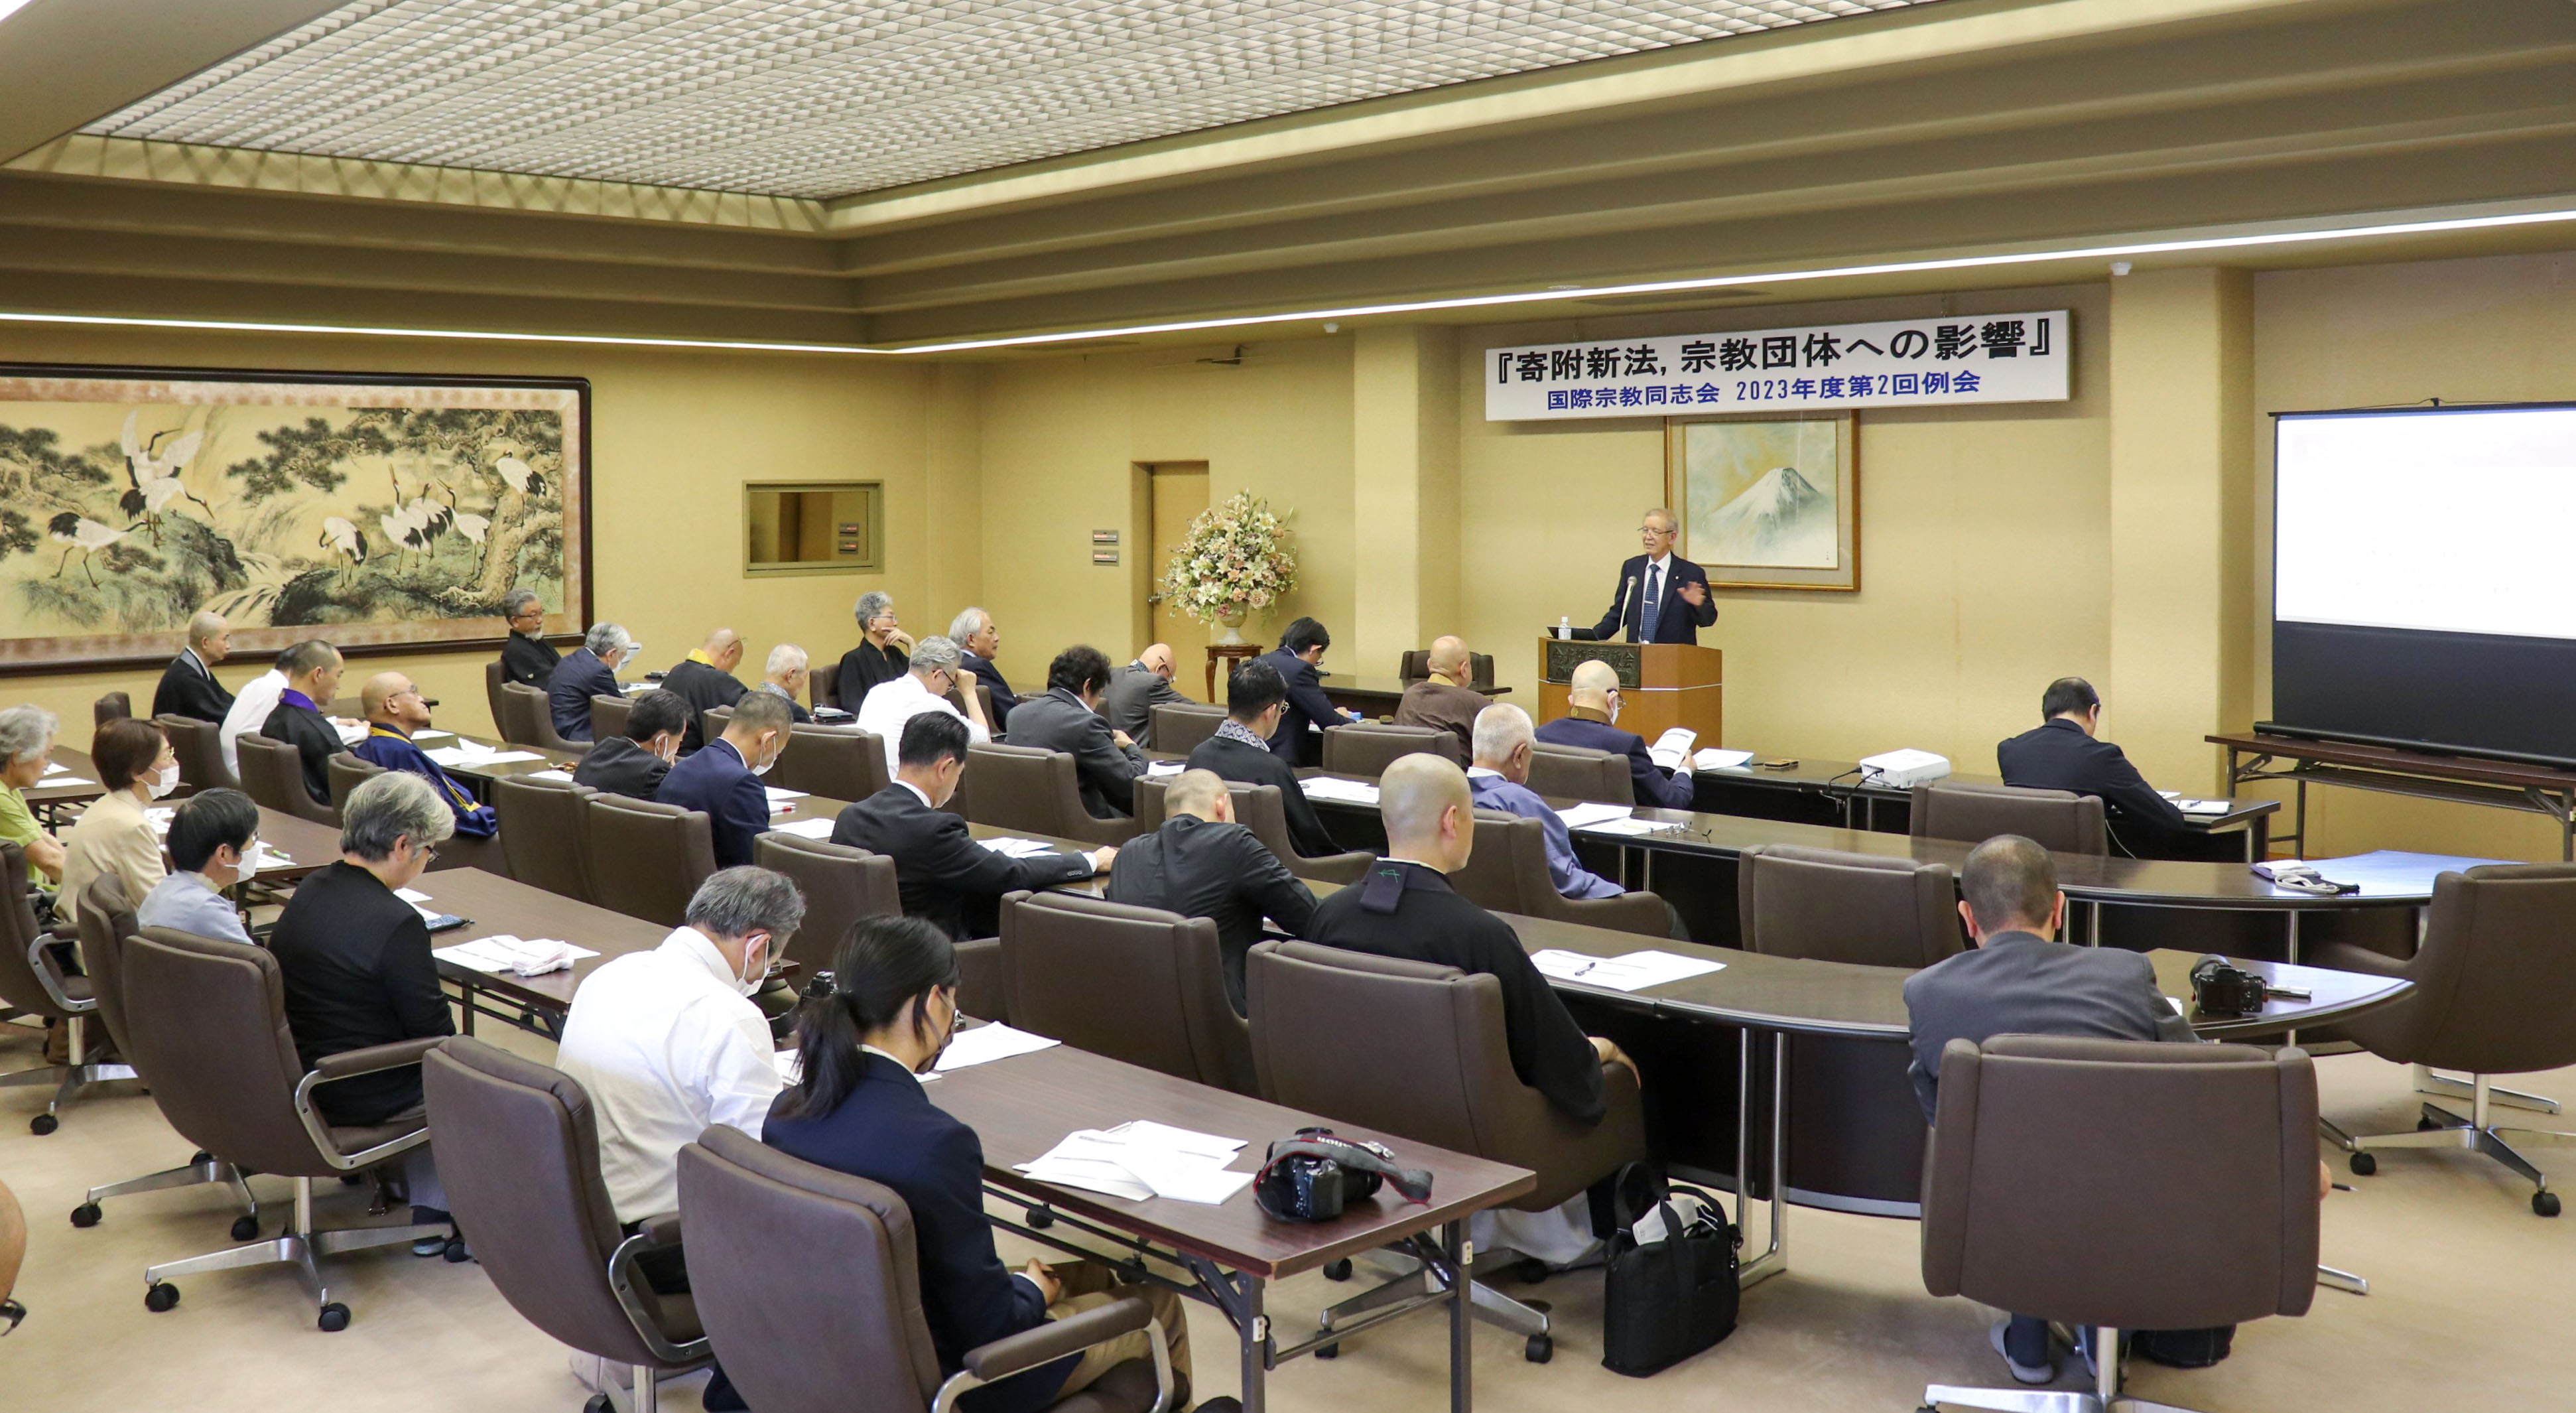 宗教法人法の専門家である櫻井圀郎教授の講演に耳を傾ける国宗会員諸師